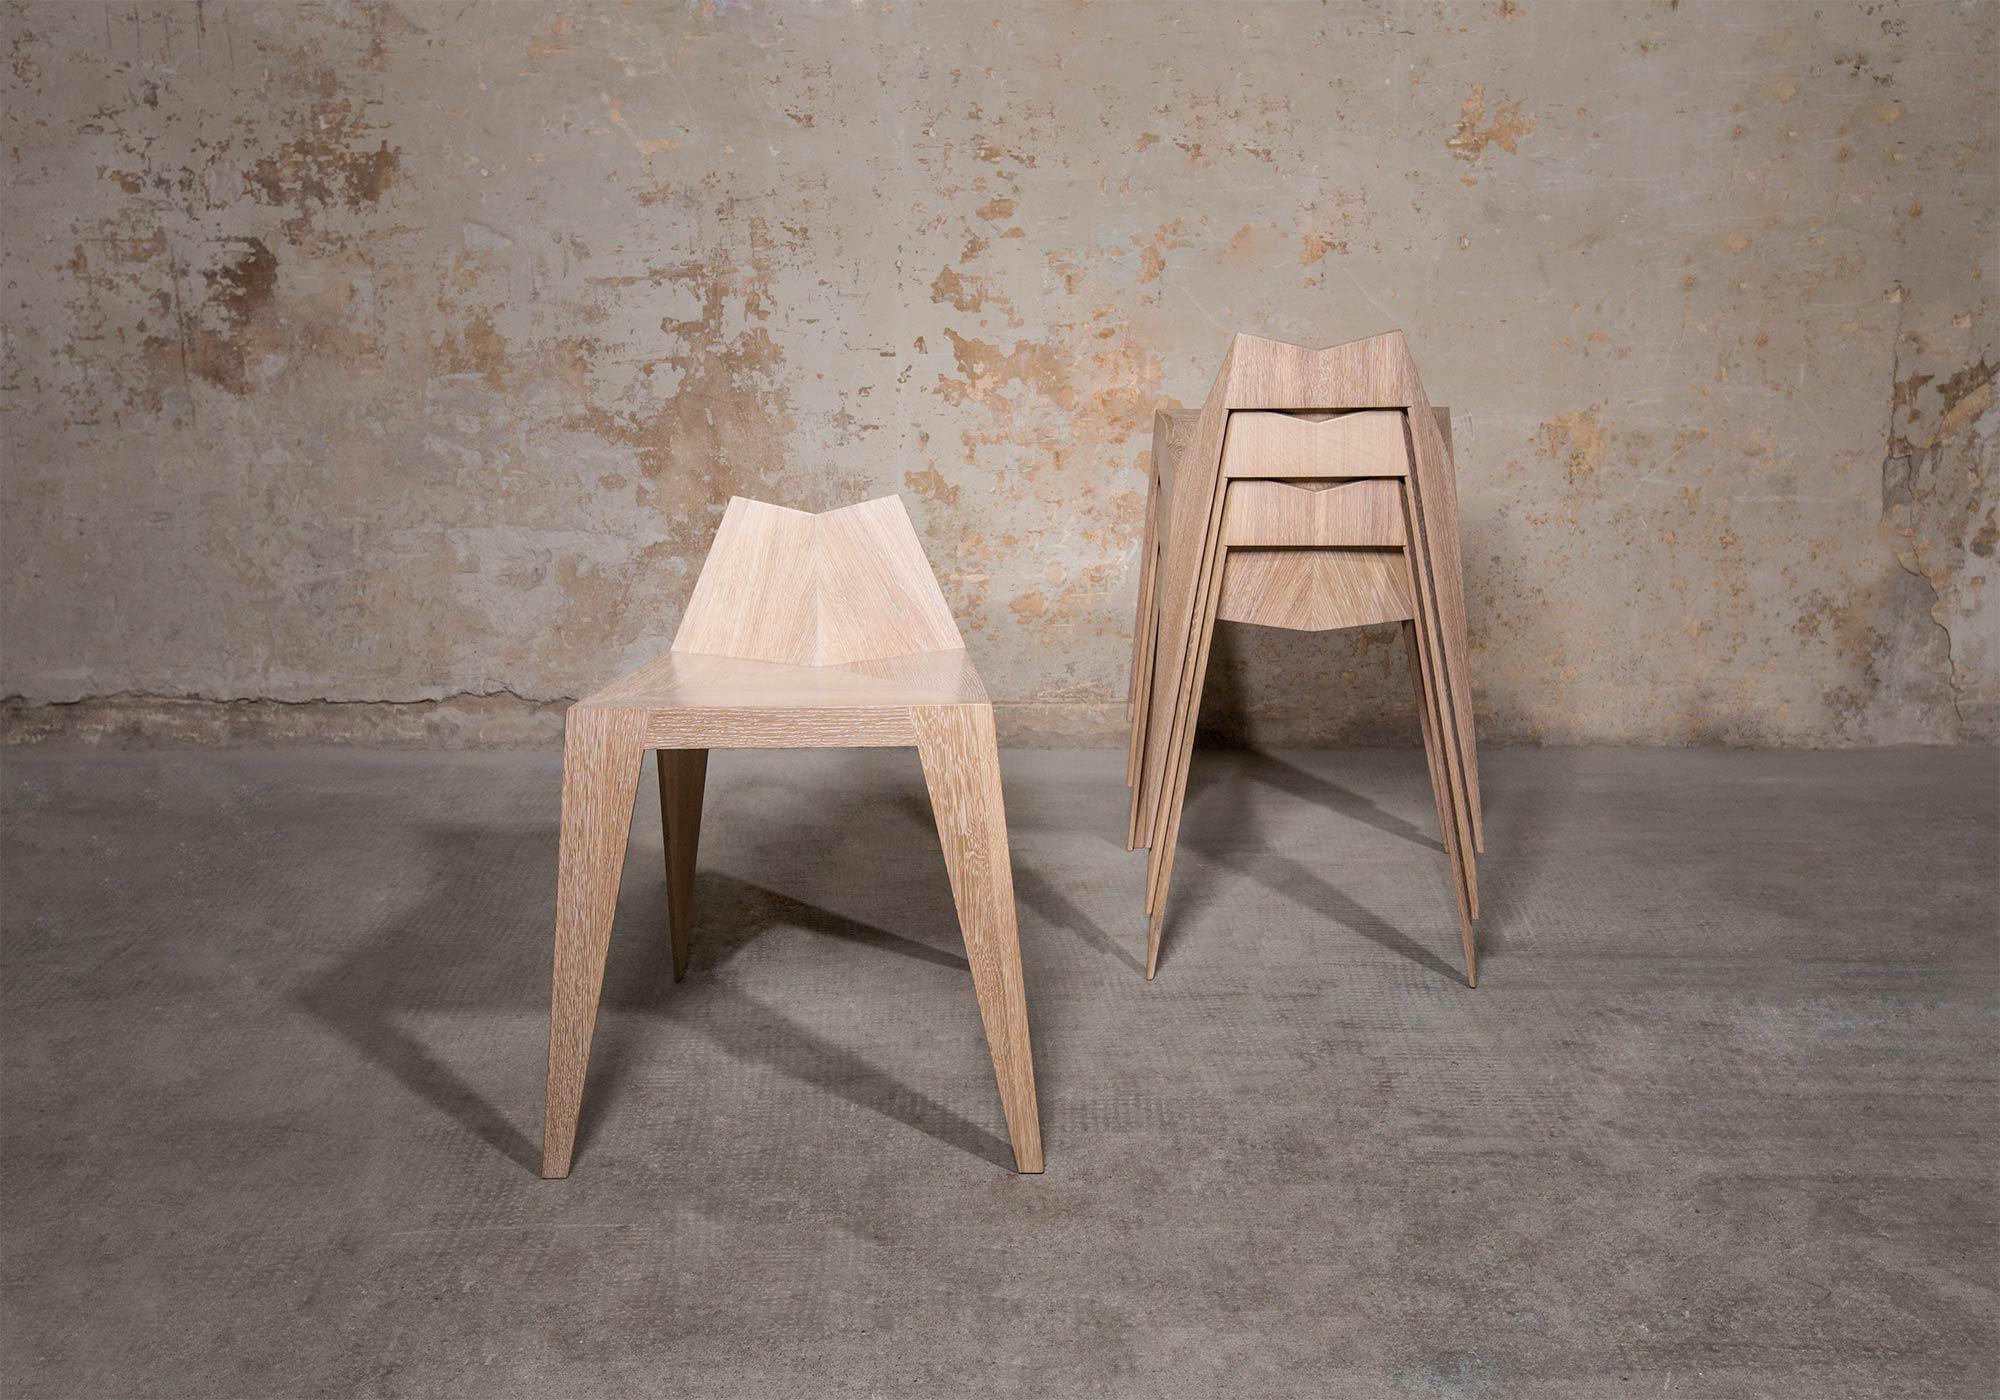 Contemporary Stocker Chair Stool by Matthias Scherzinger